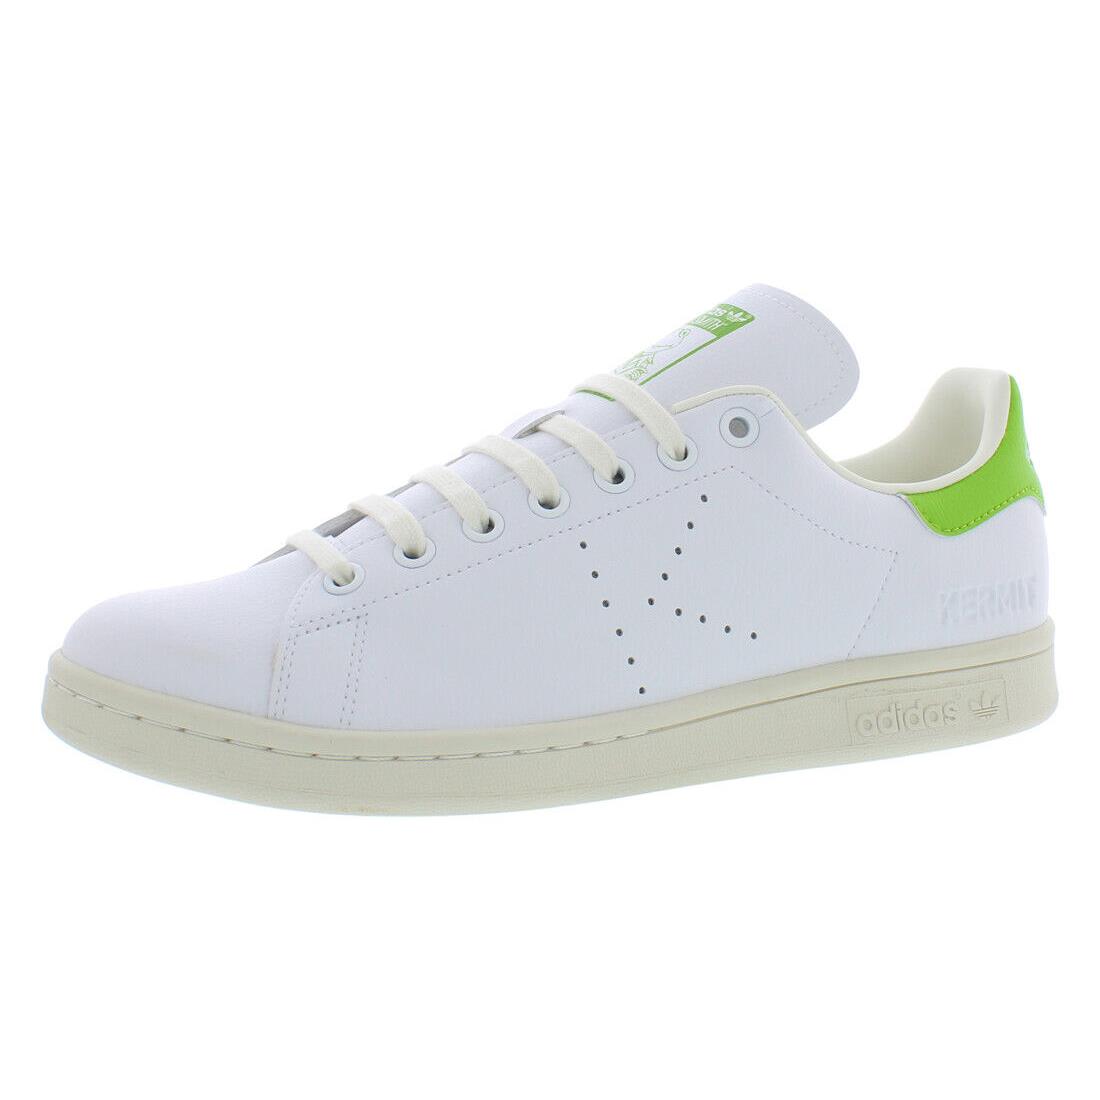 Adidas Stan Smith Mens Shoes - White/Lime, Main: White